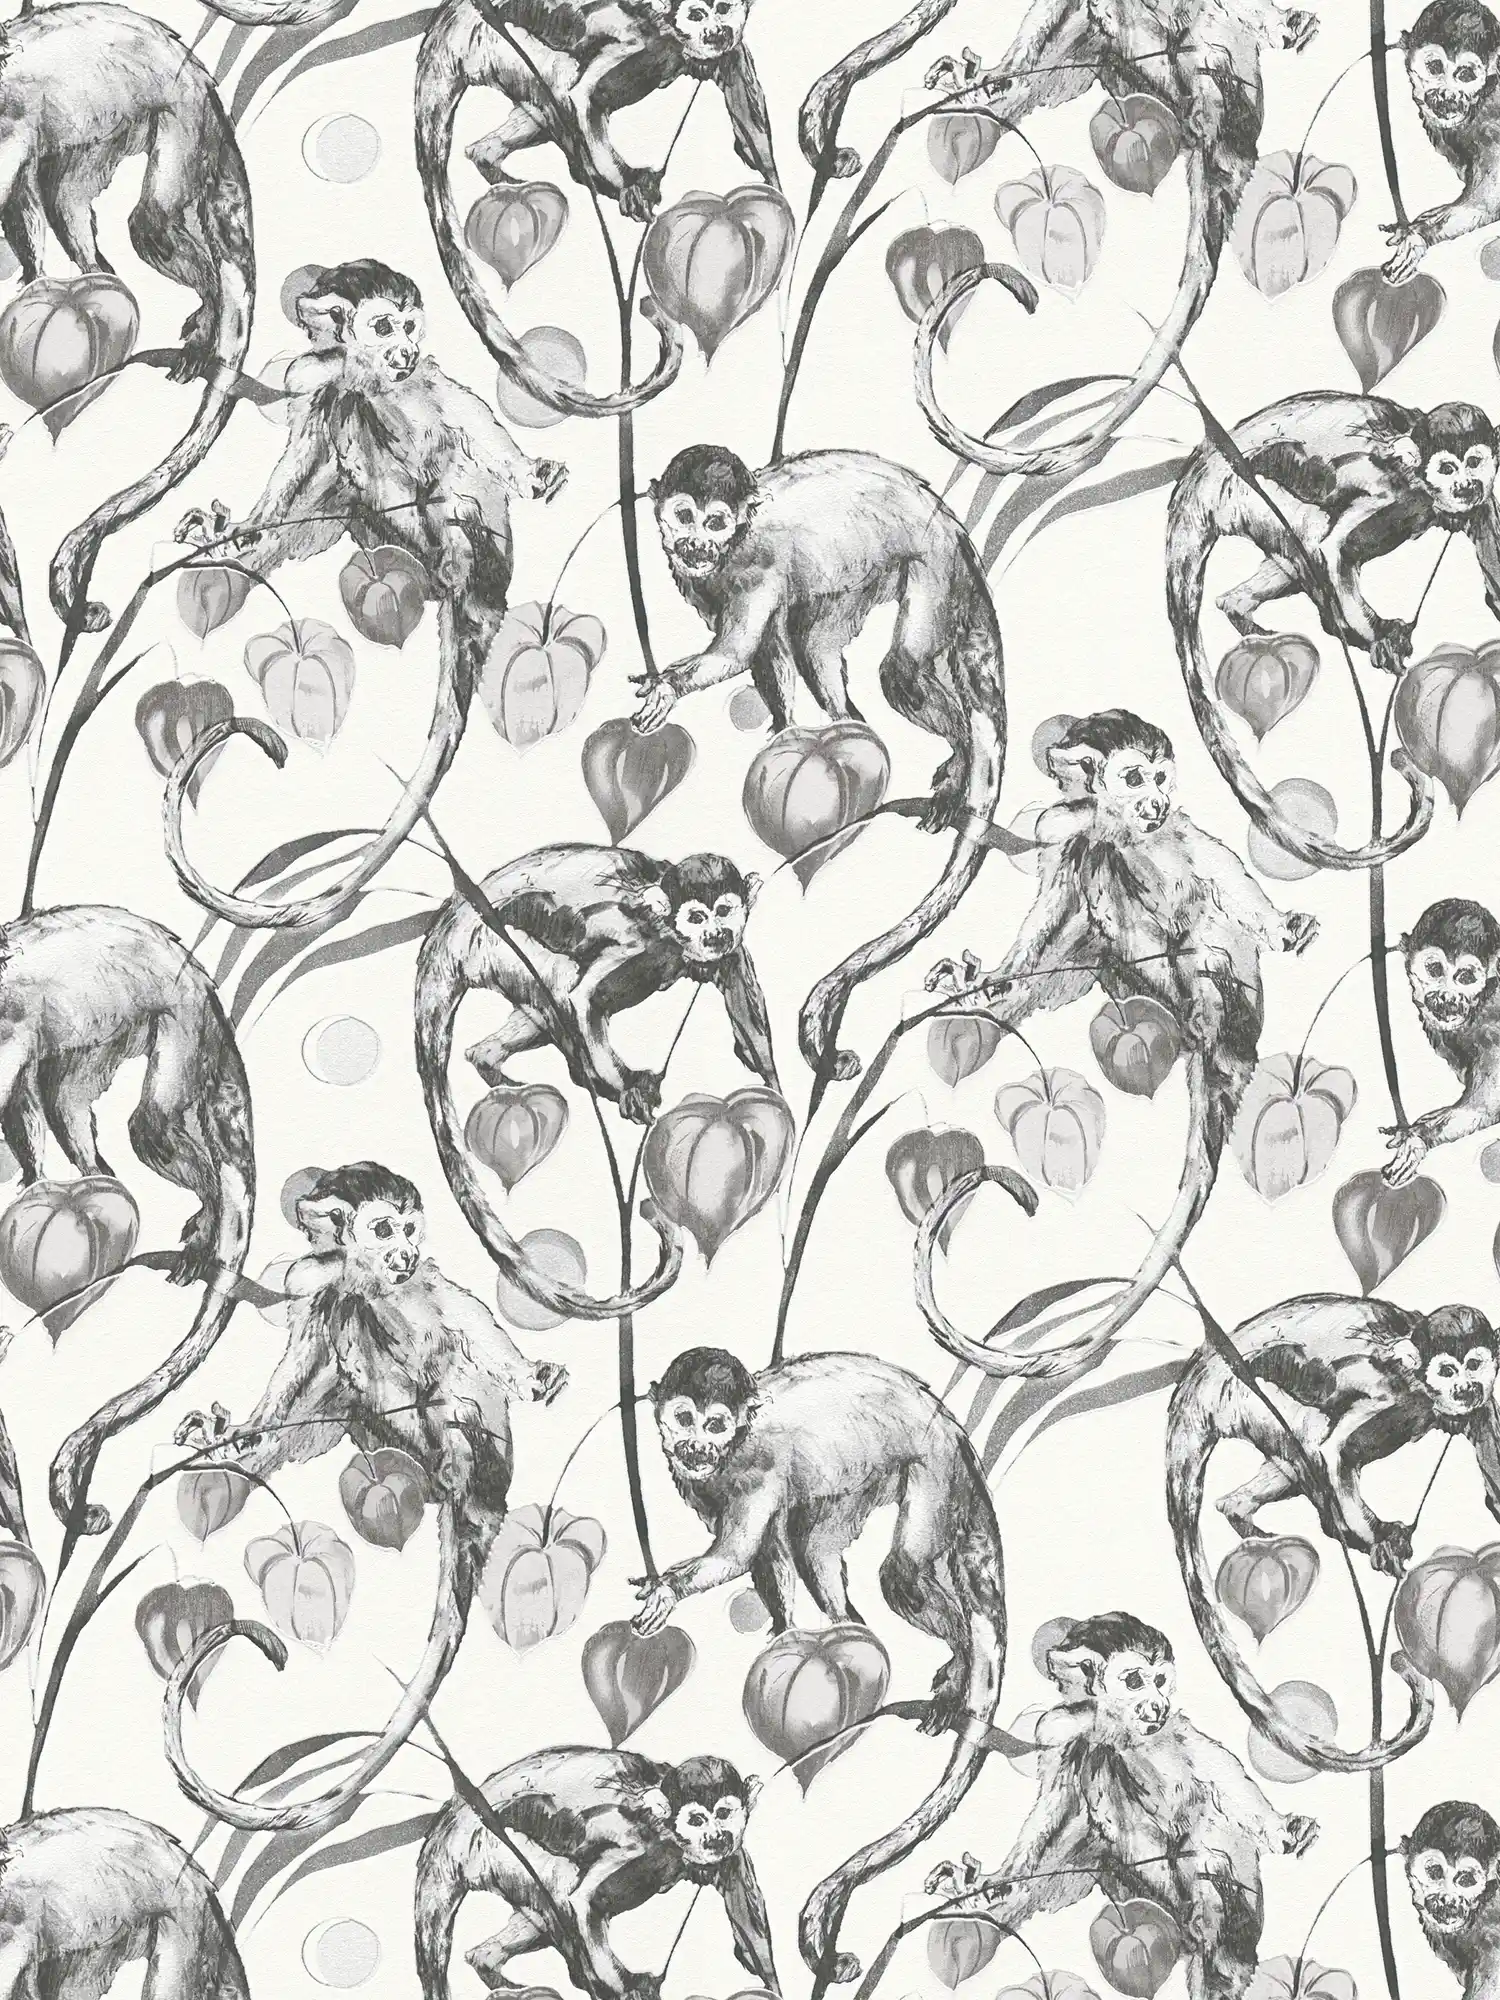 Carta da parati in tessuto non tessuto MICHALSKY motivo scimmia bianco e nero
